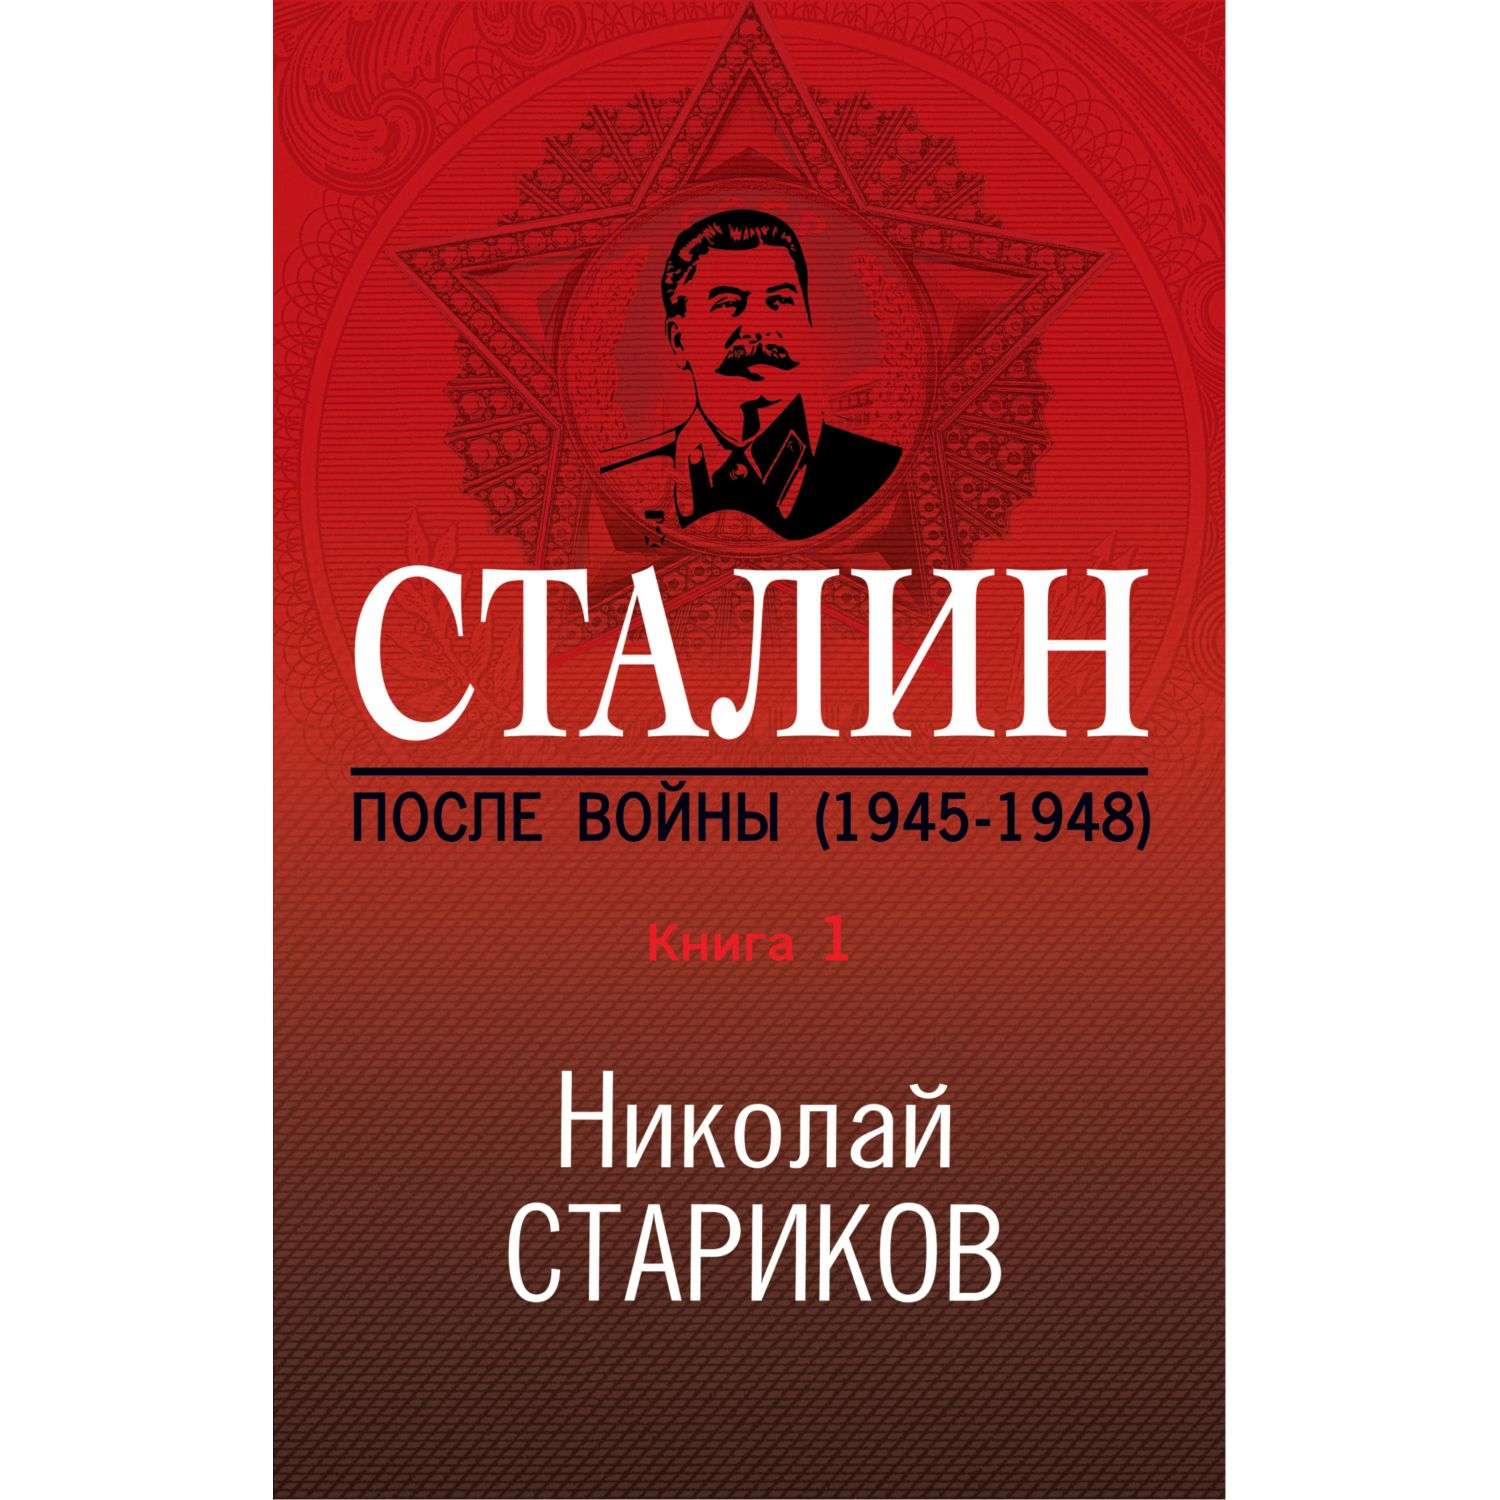 Книга Эксмо Сталин После войны Часть первая 1945-1948 - фото 3